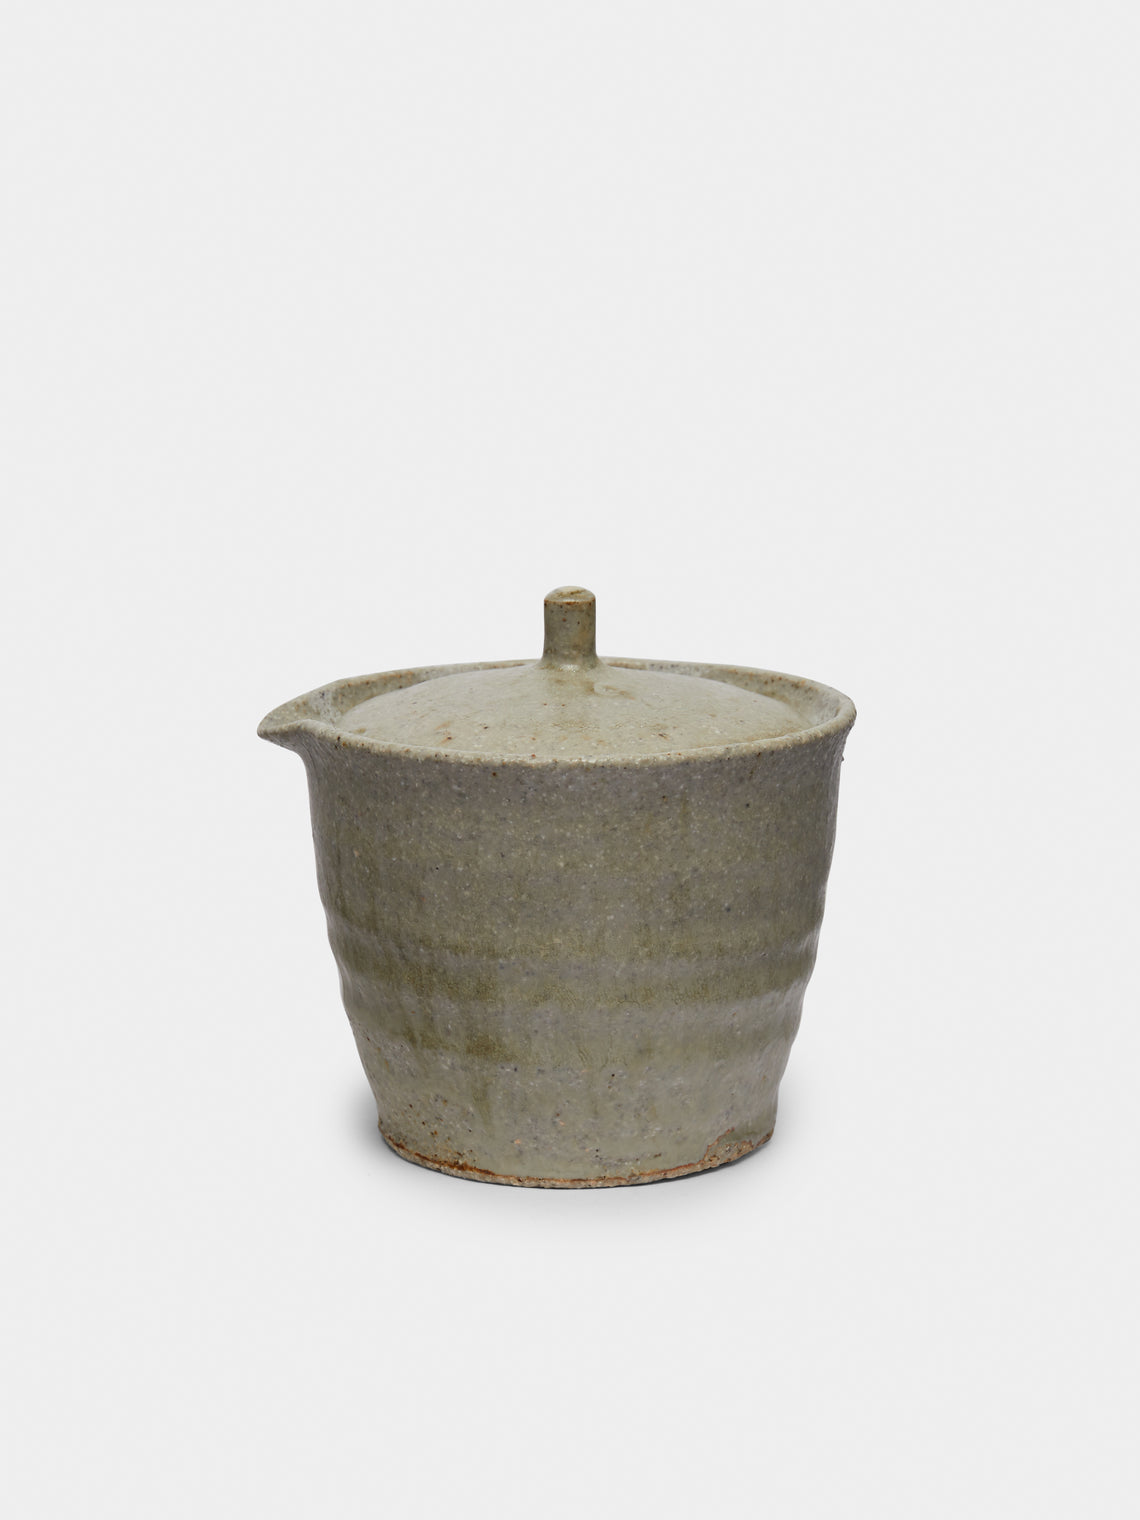 Ingot Objects - Shiboridashi Ash-Glazed Ceramic Teapot - Beige - ABASK - 